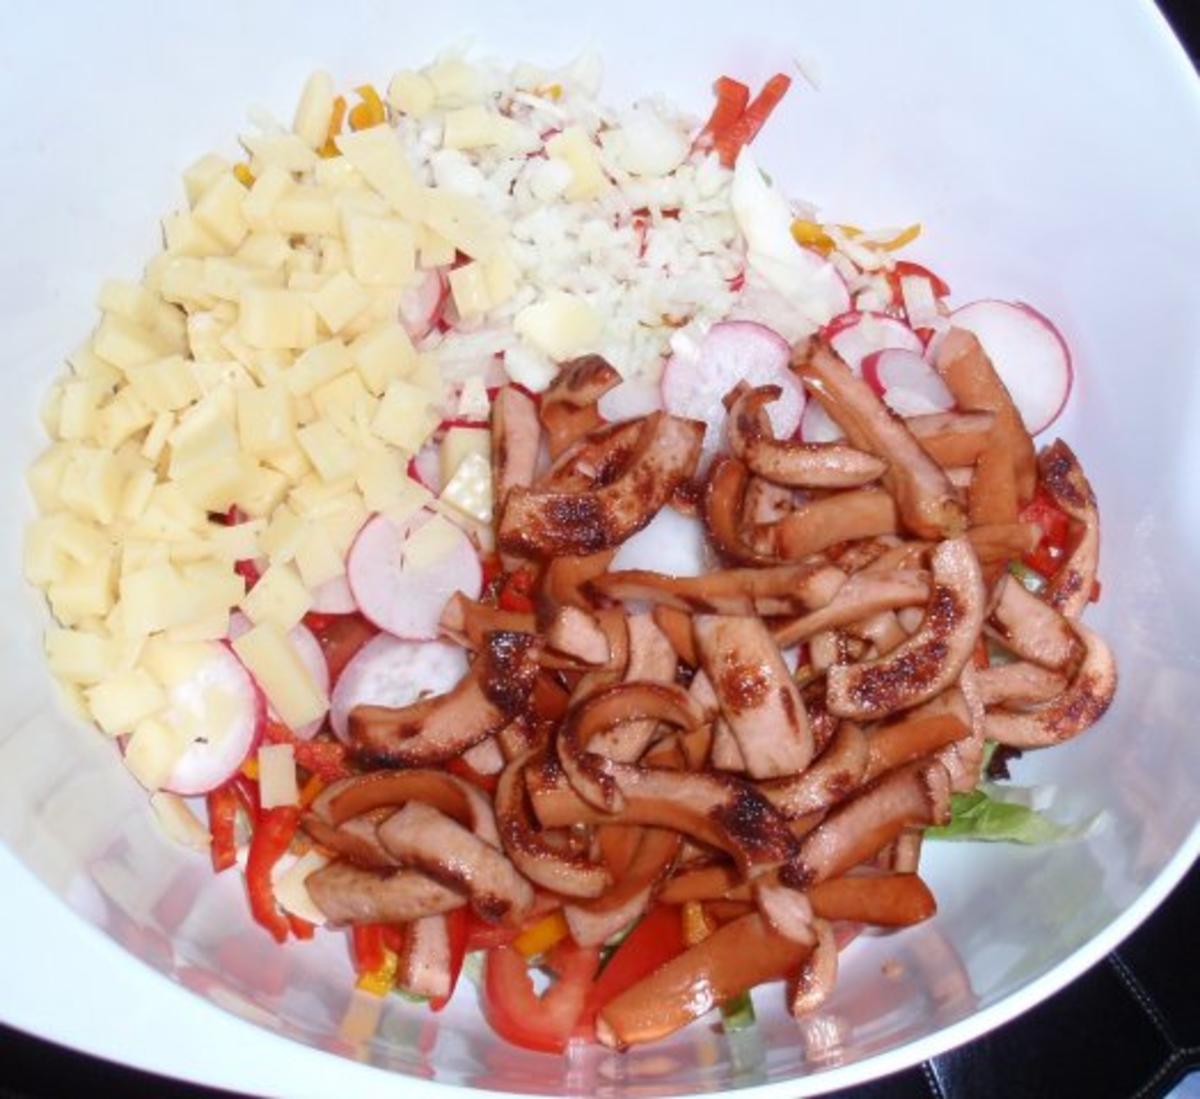 Bunter Salat mit gebratenen Würstchenstreifen und Käse - Rezept - Bild Nr. 10